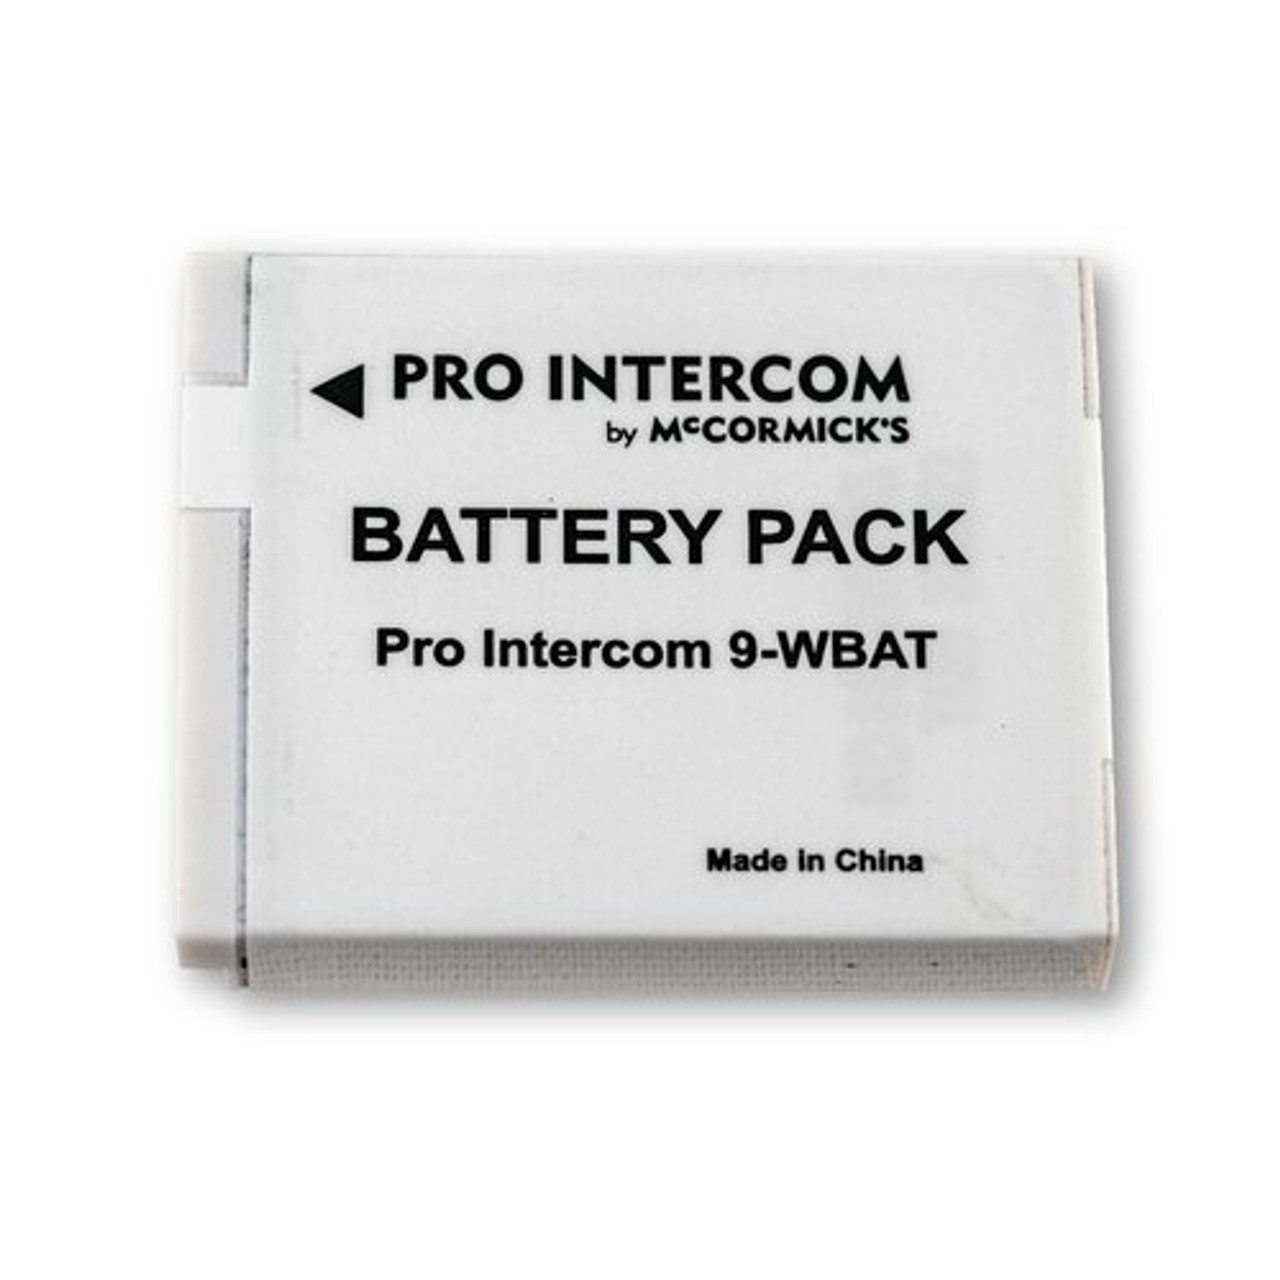 Pro Intercom WBAT Wireless Intercom Replacement Battery Pack (WBAT)